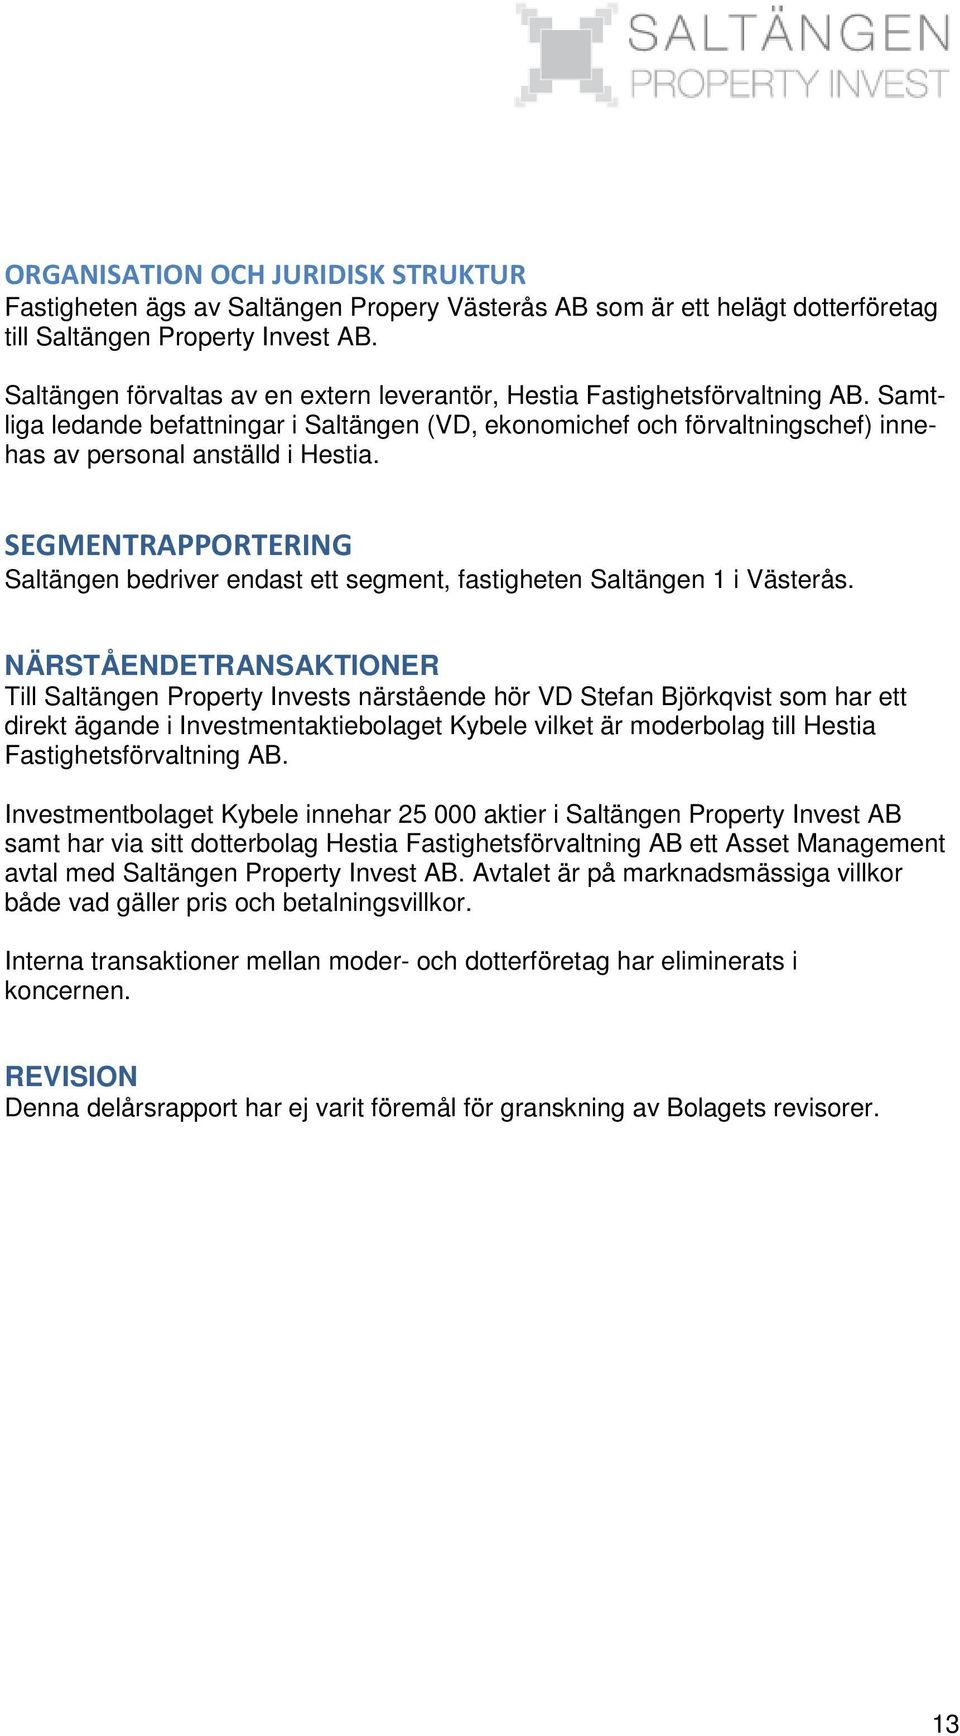 SEGMENTRAPPORTERING Saltängen bedriver endast ett segment, fastigheten Saltängen 1 i Västerås.